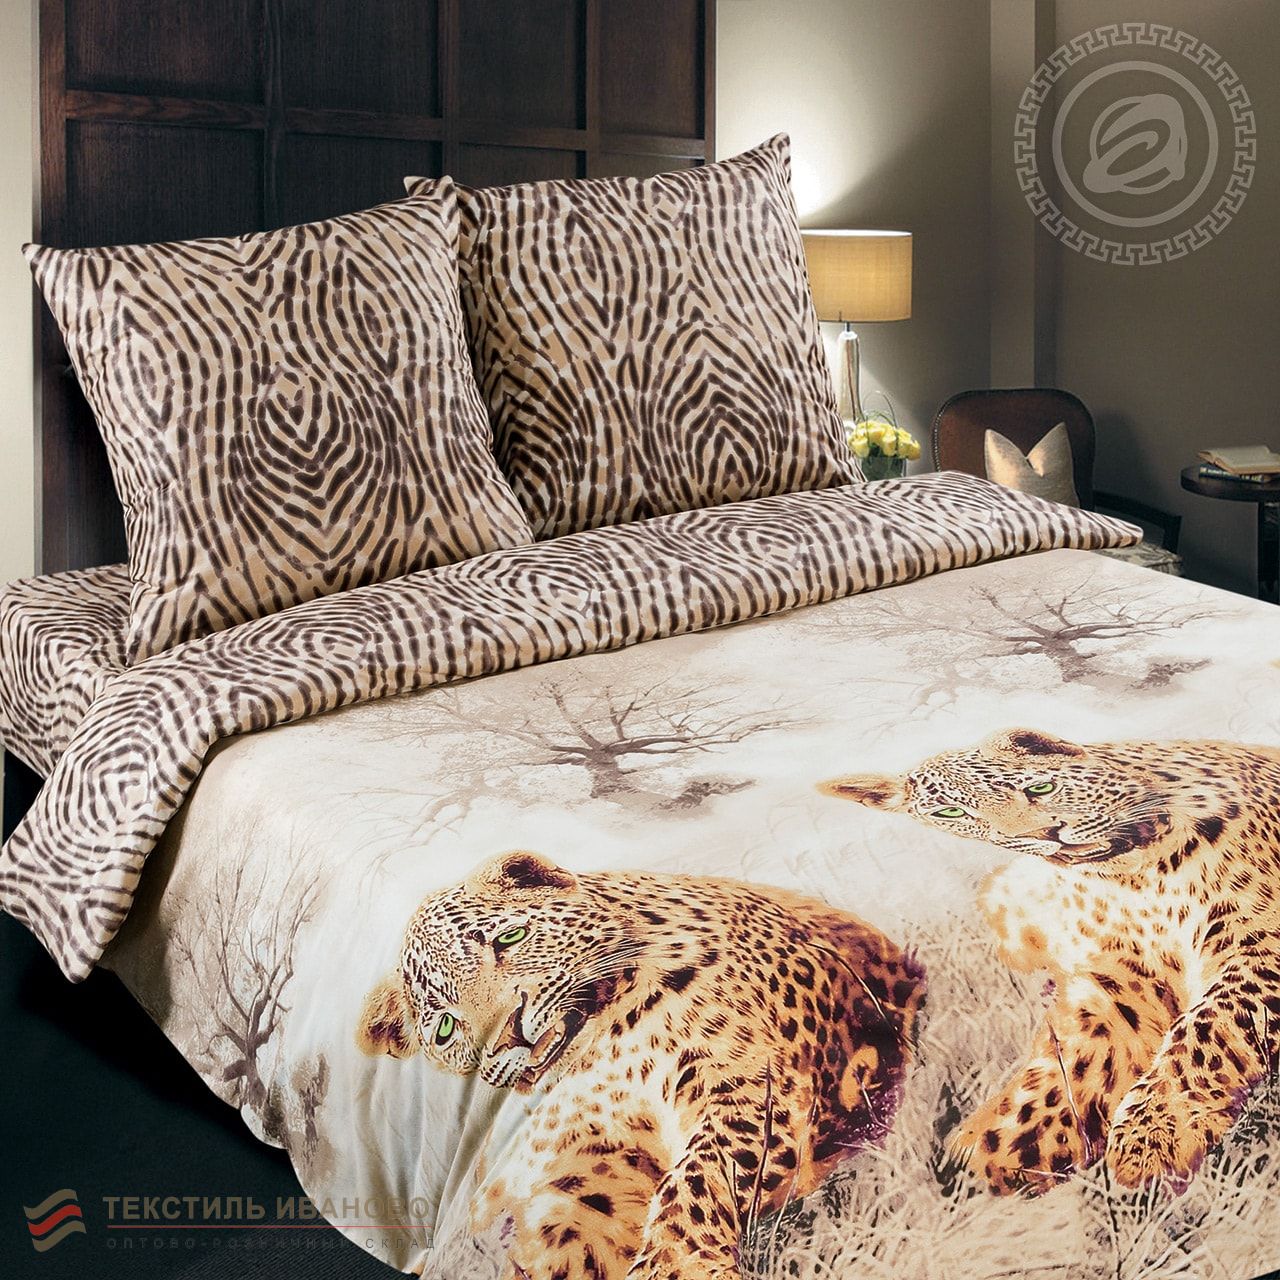  Комплект постельного белья Леопард поплин De Luxe, фото 1 